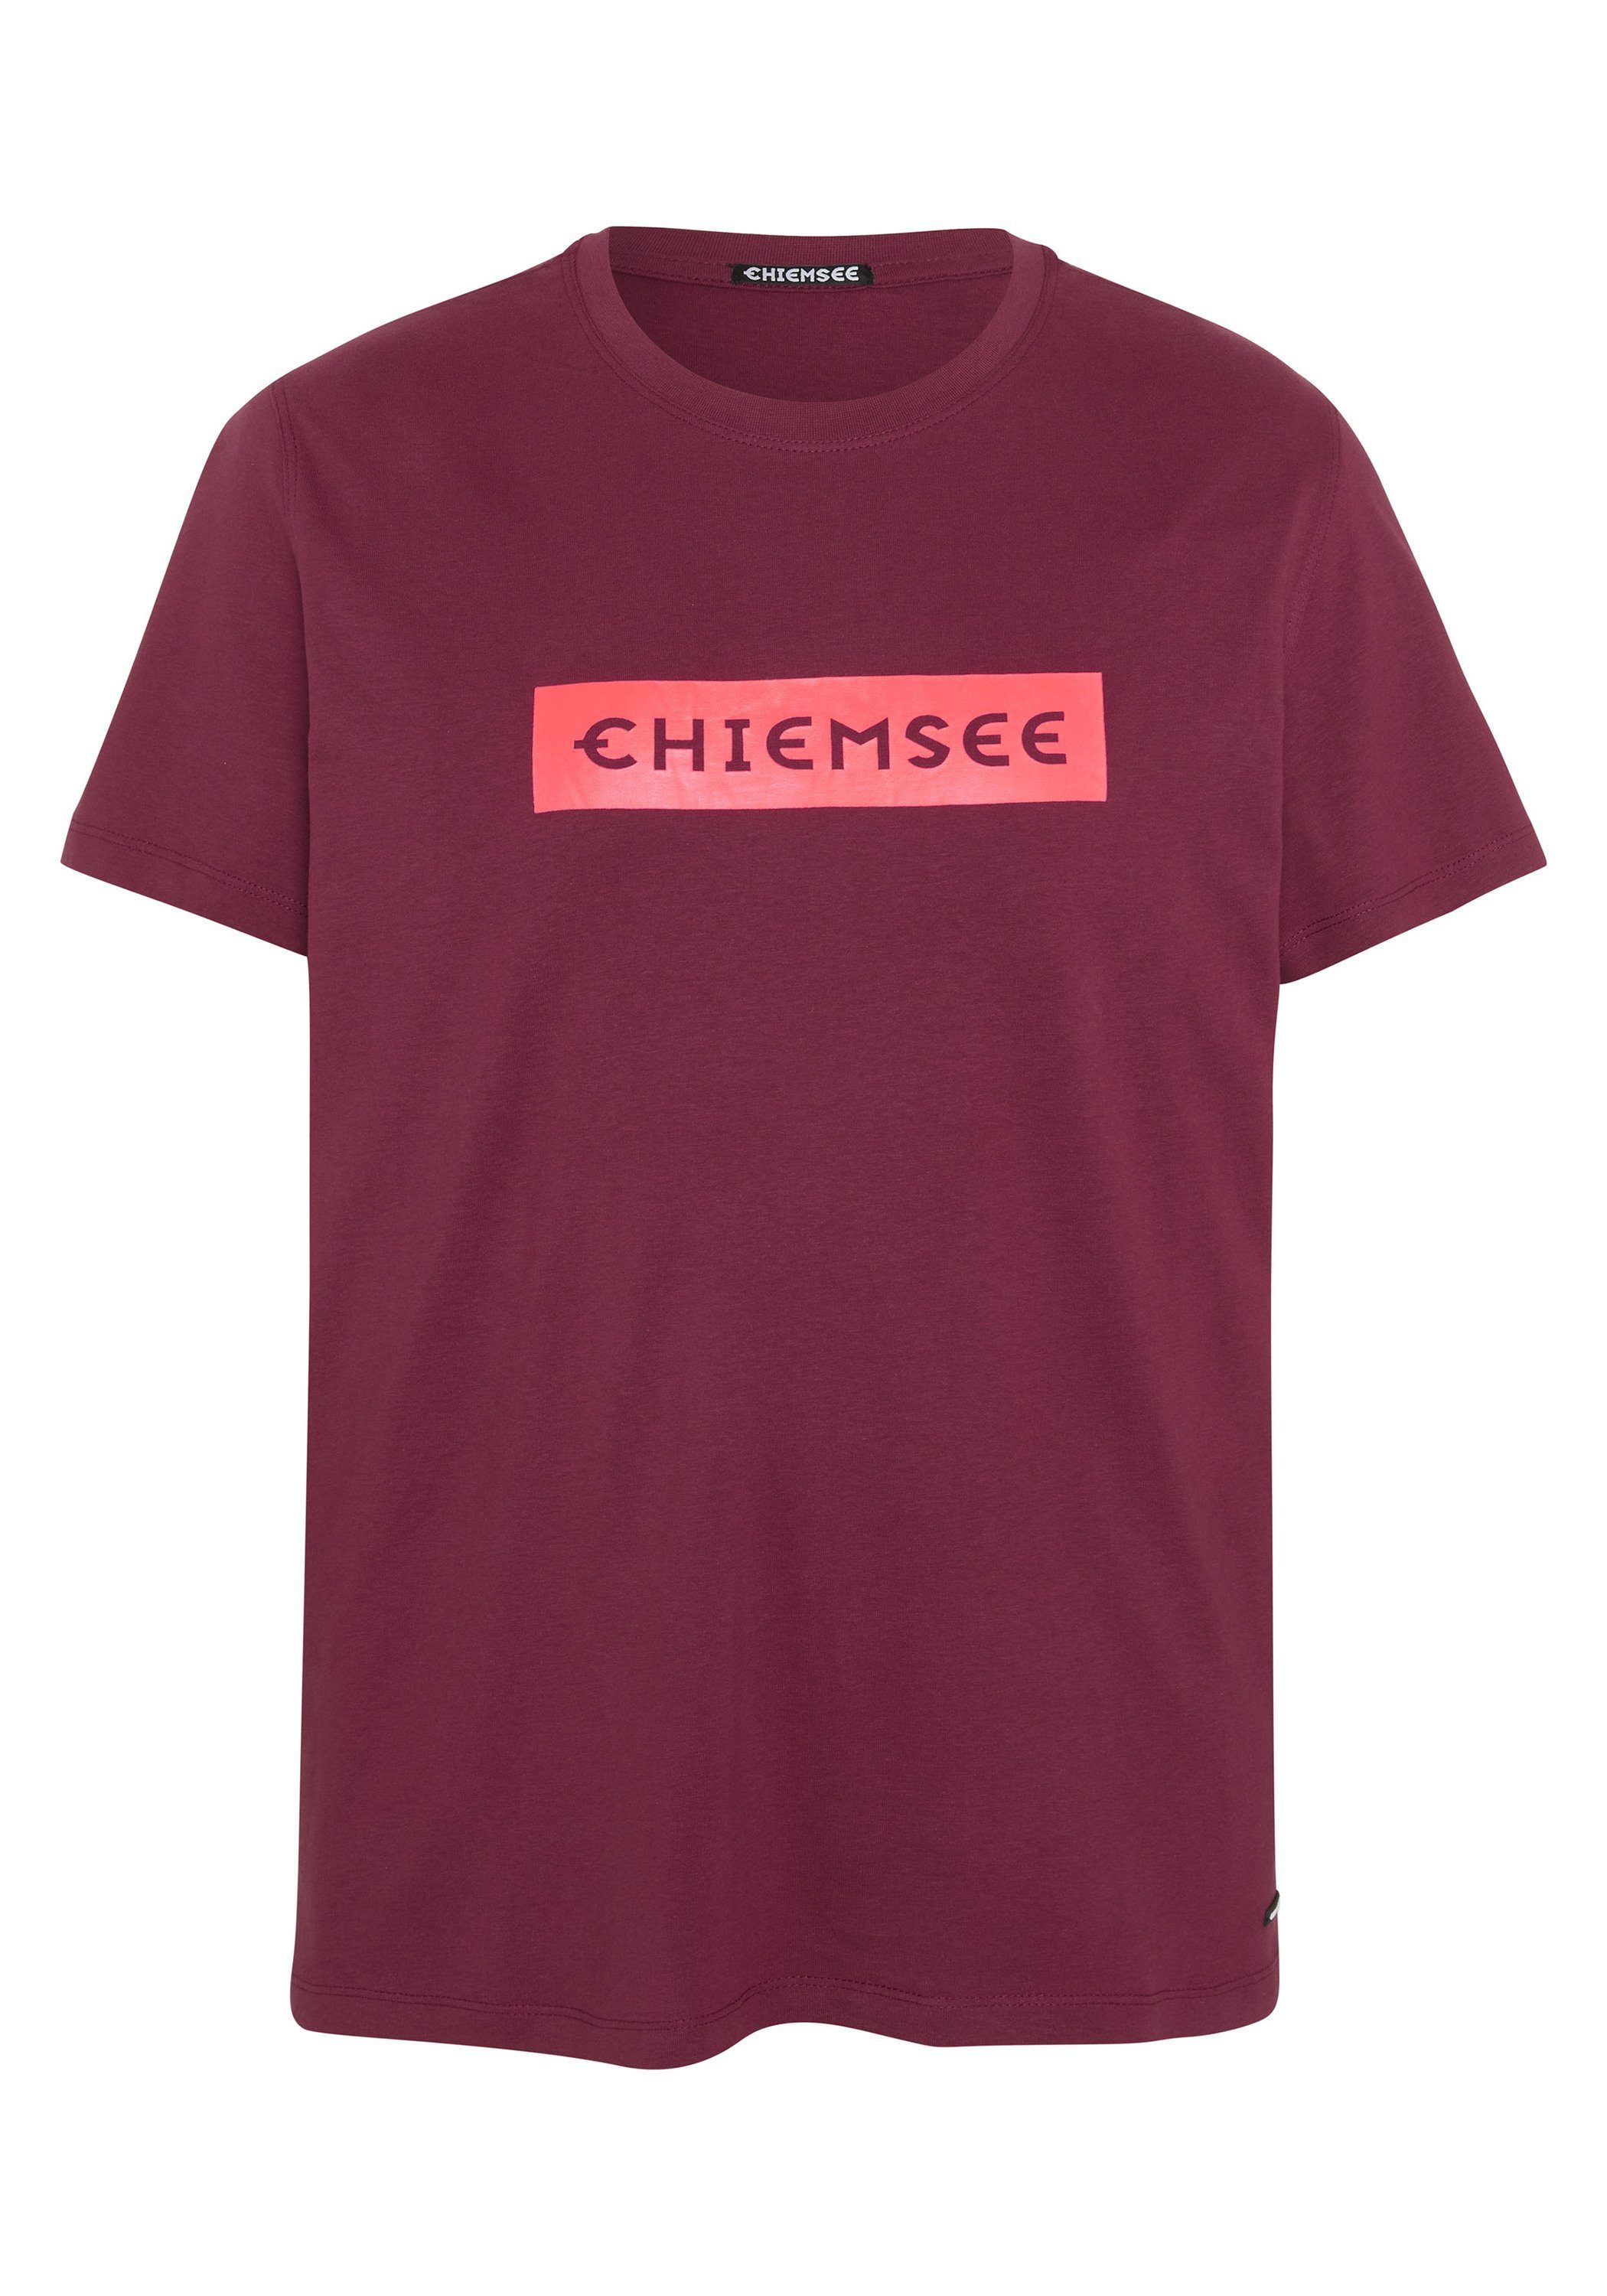 Chiemsee Print-Shirt T-Shirt mit Label-Schriftzug 1 19-1934 Tibetan Red